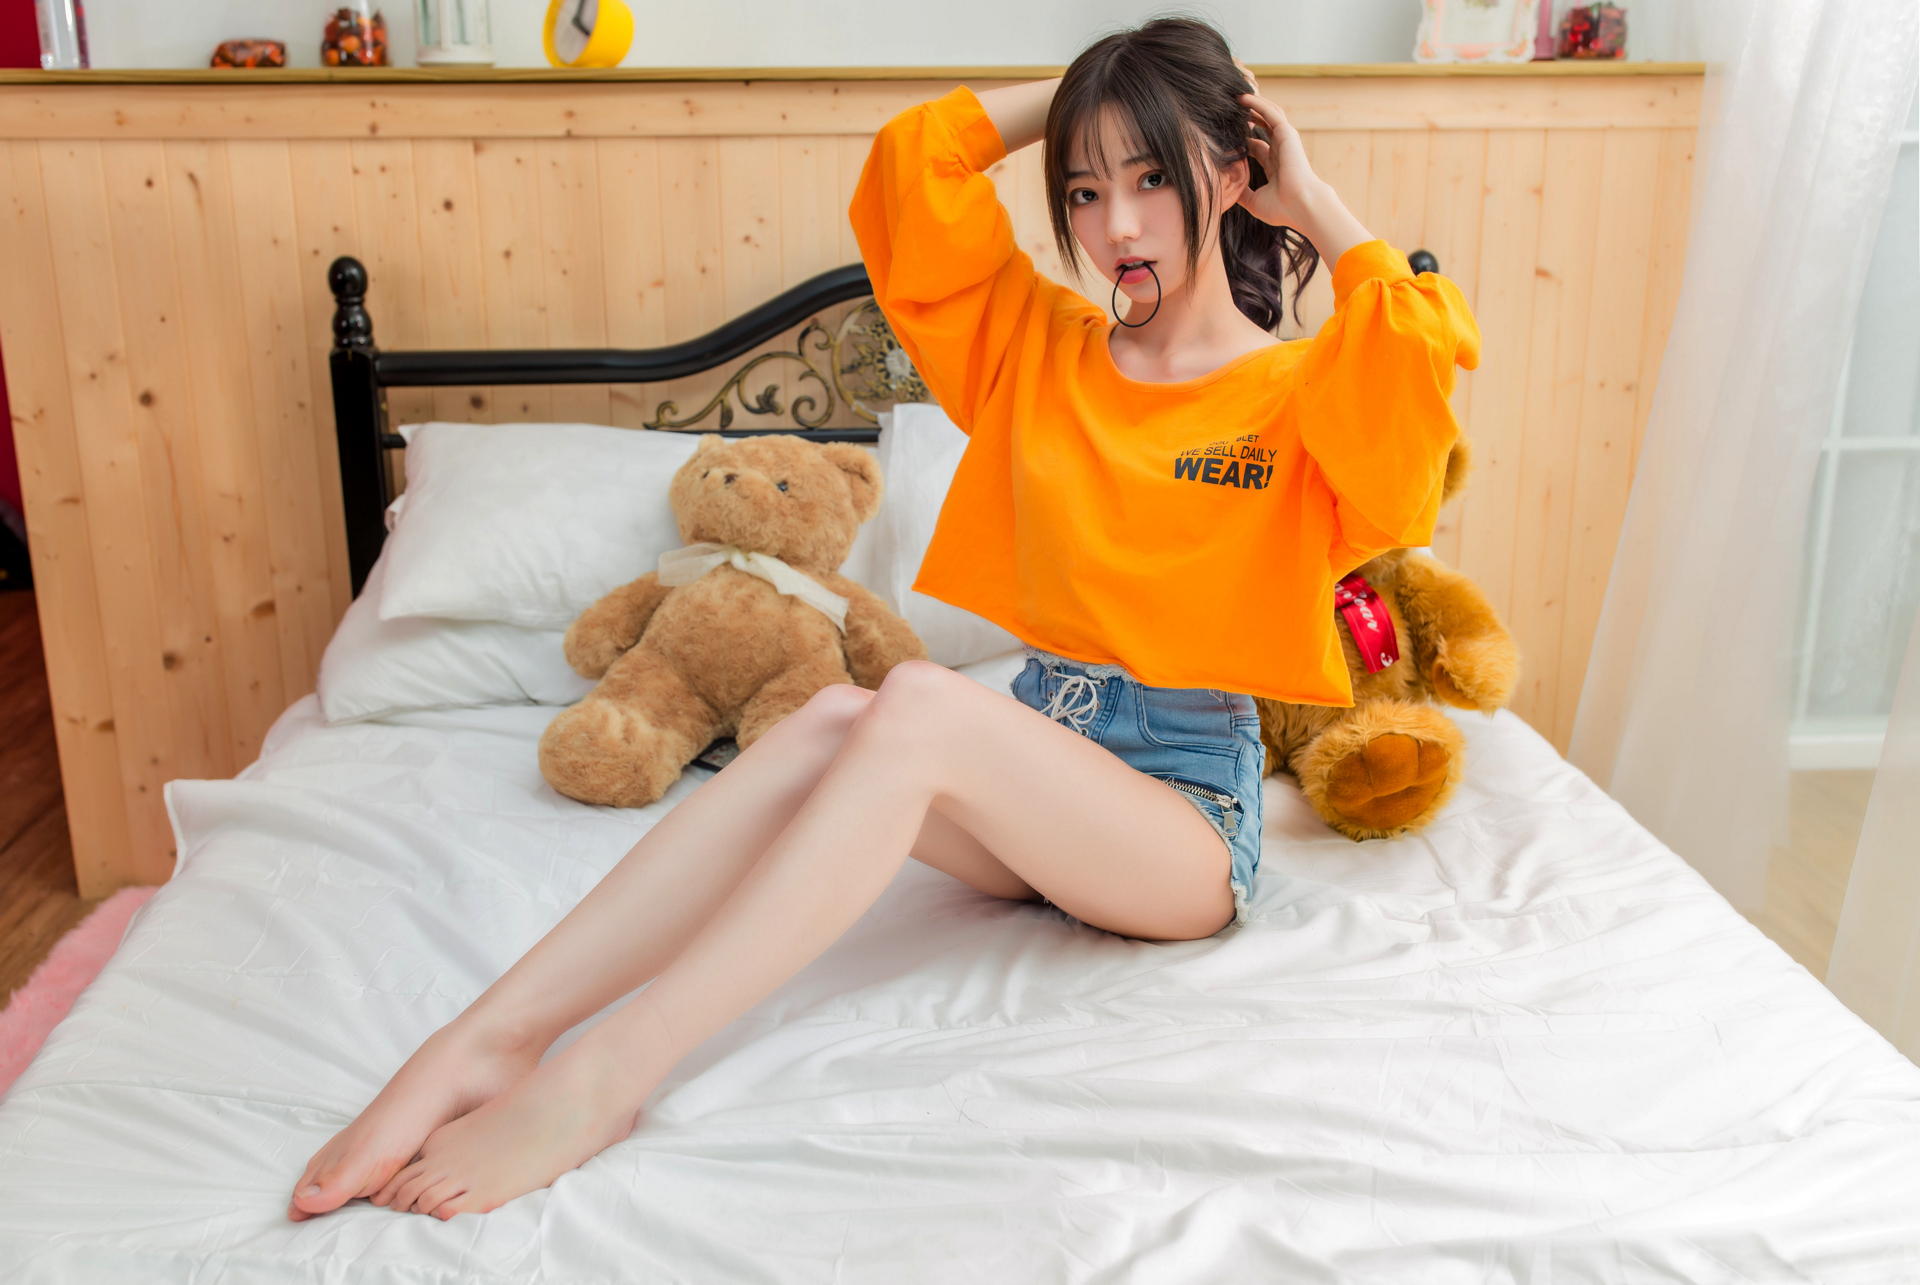 Asian Model Women Long Hair Brunette Sitting Shorts Bed Pullover Teddy Bears Pillow Ponytail Barefoo 1920x1285